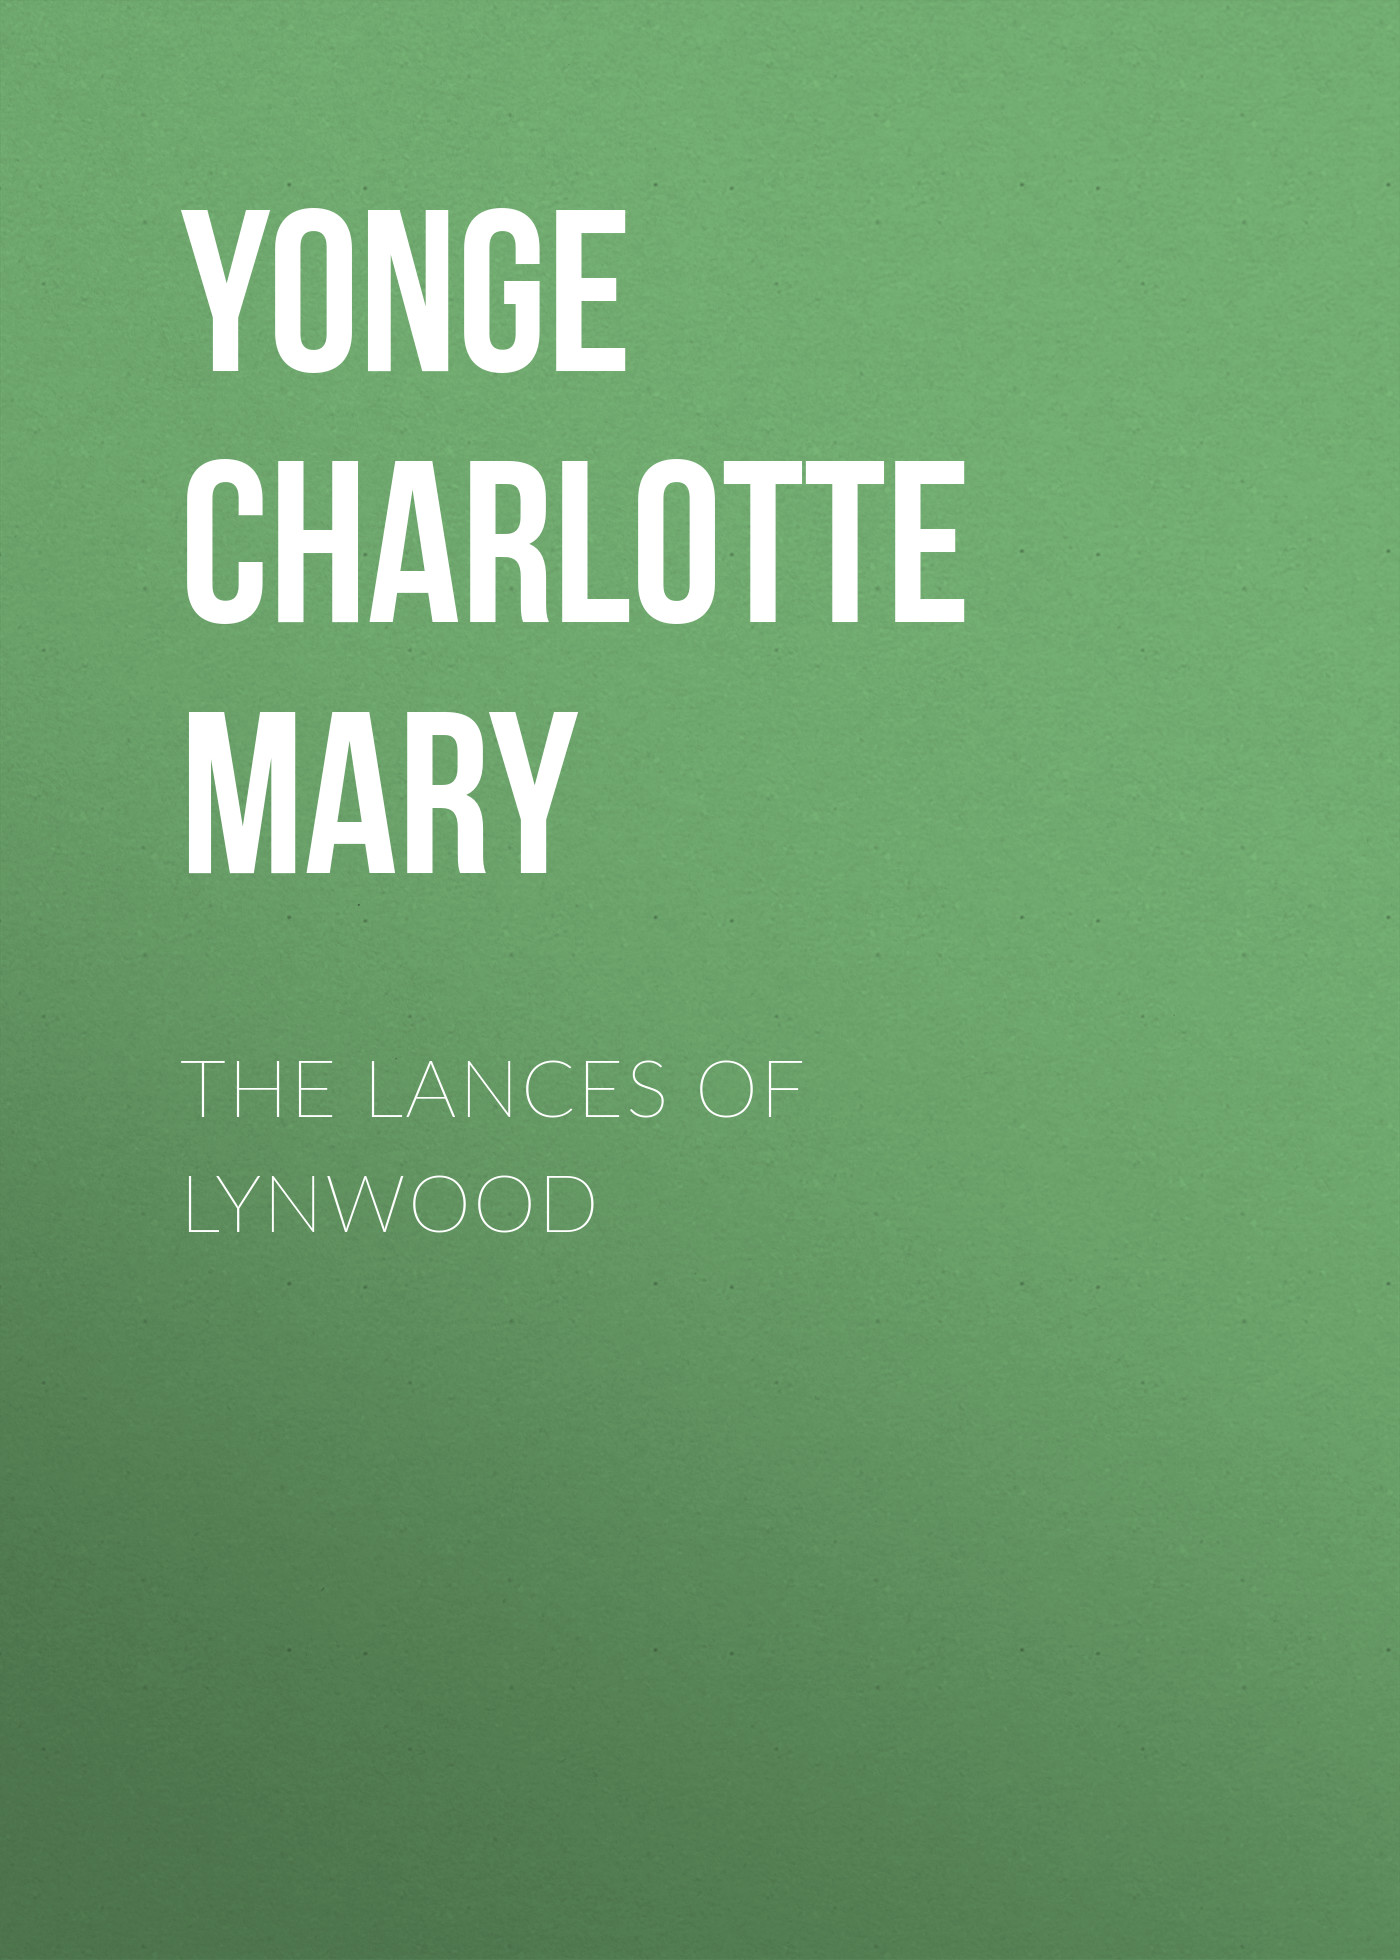 Книга The Lances of Lynwood из серии , созданная Charlotte Yonge, написана в жанре Историческая фантастика, Зарубежная старинная литература, Зарубежная классика, Исторические приключения. Стоимость электронной книги The Lances of Lynwood с идентификатором 36094573 составляет 0 руб.